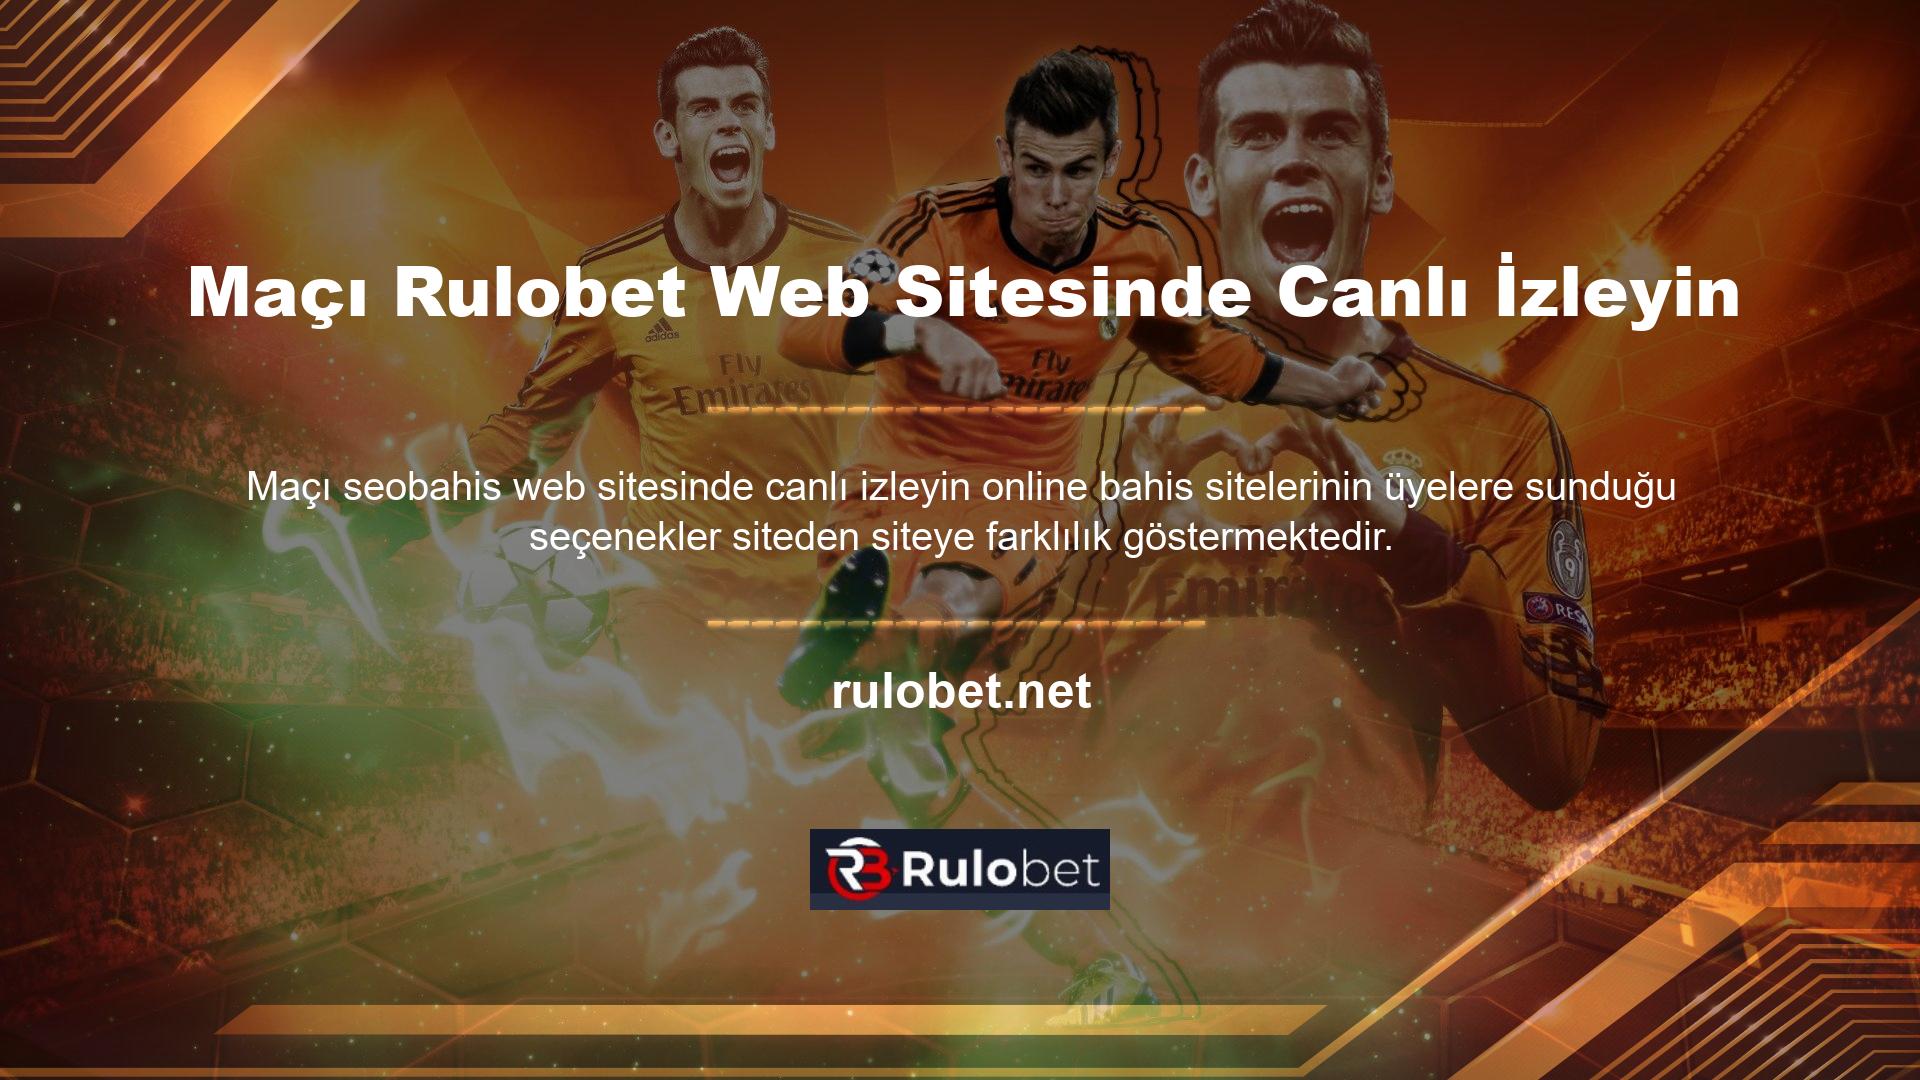 Oyuncuların bahislerini daha kolay kontrol edebilmeleri için canlı oyunlar Rulobet web sitesinde izlenebilir